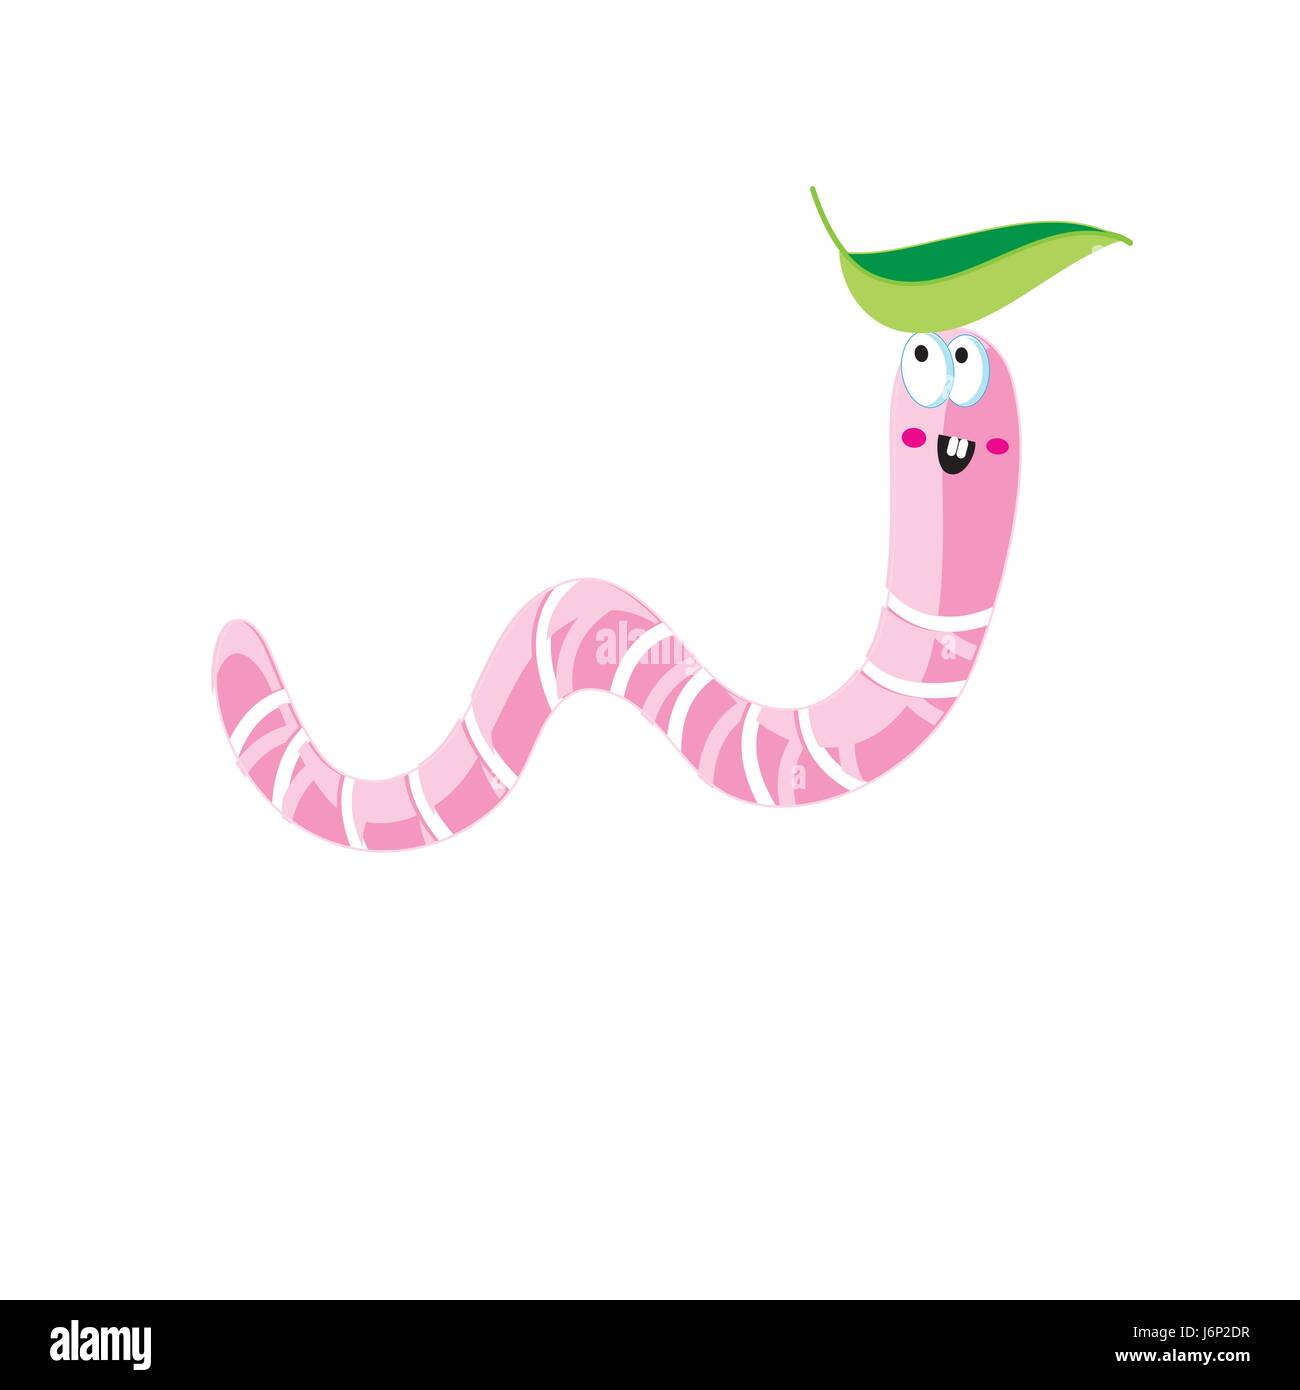 Vector сartoon icon of pink worm Stock Vector